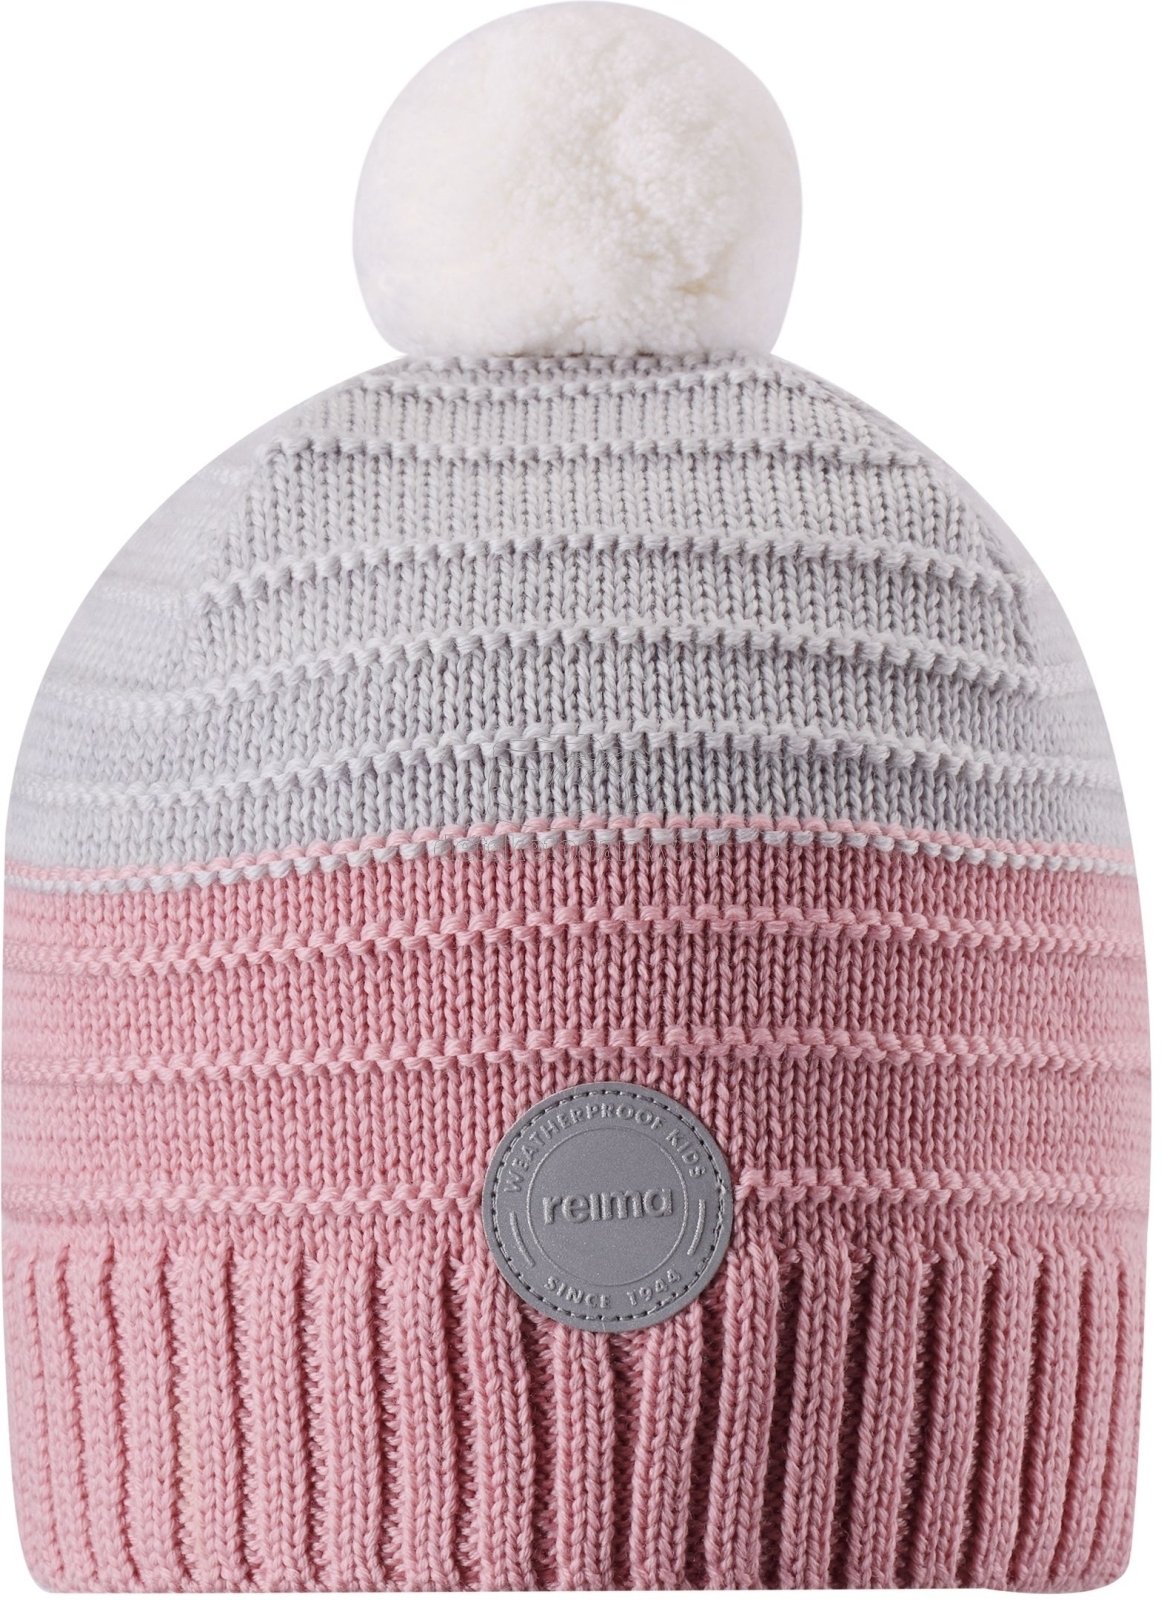 Detská zimná čiapka Reima 538080-4101 soft rose pink